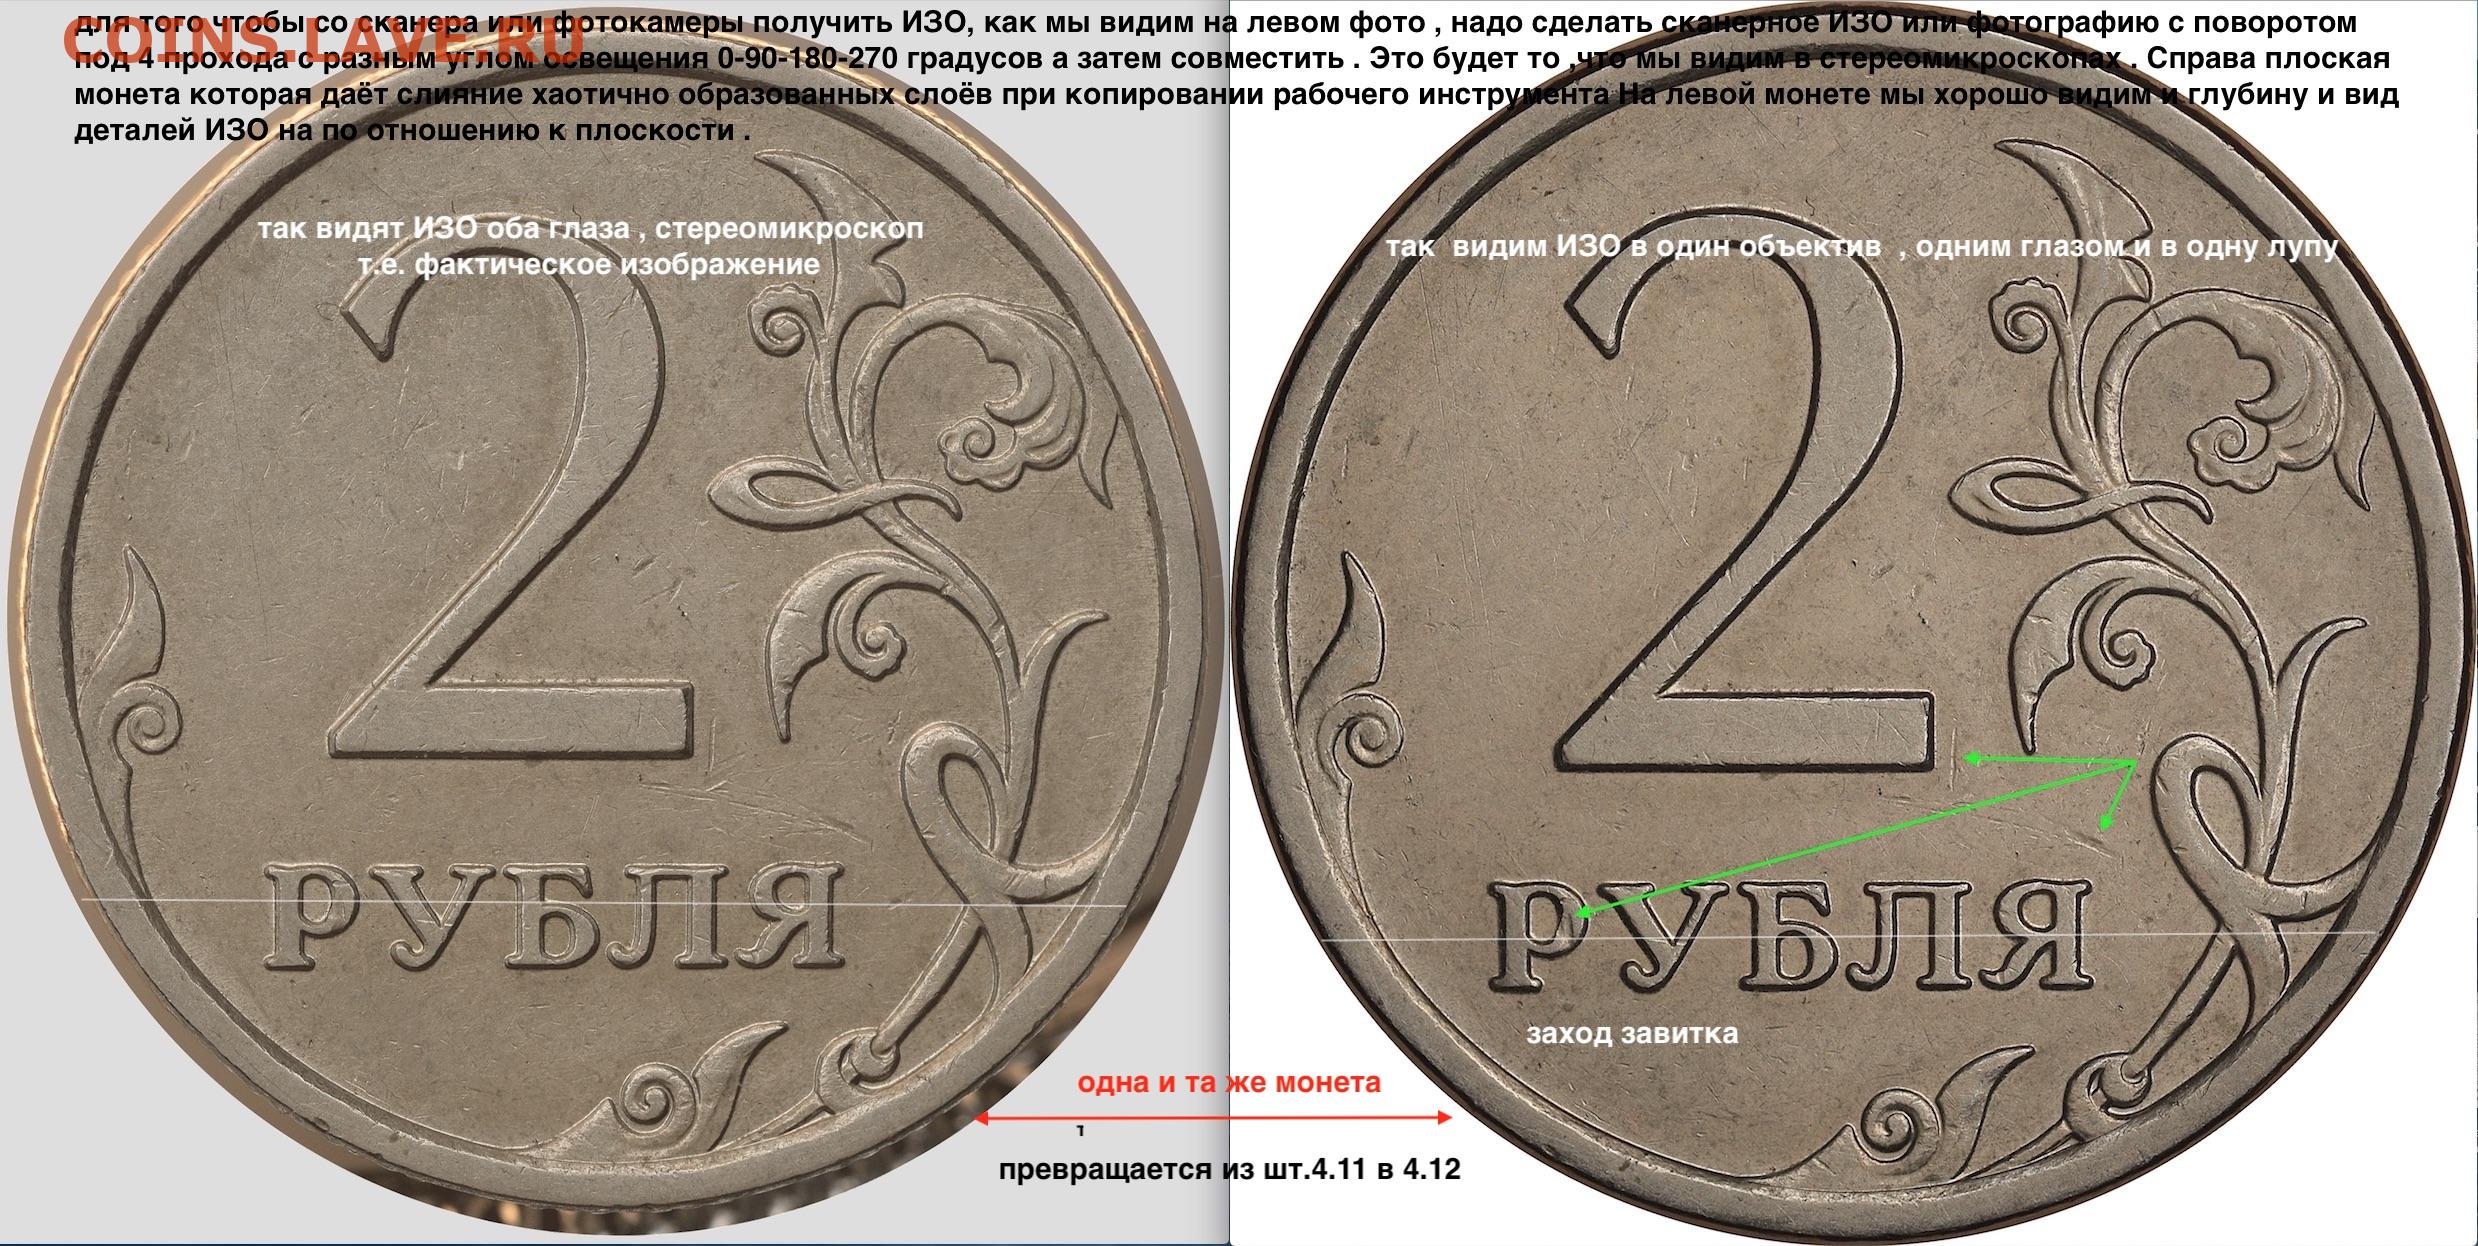 20 2 что означает. 2 Рубля шт.4.11. 2р 2007 ММД разновидности. 2 Рубля 2007 год МД. Жетон утверждение графического изображения рубля ММД.